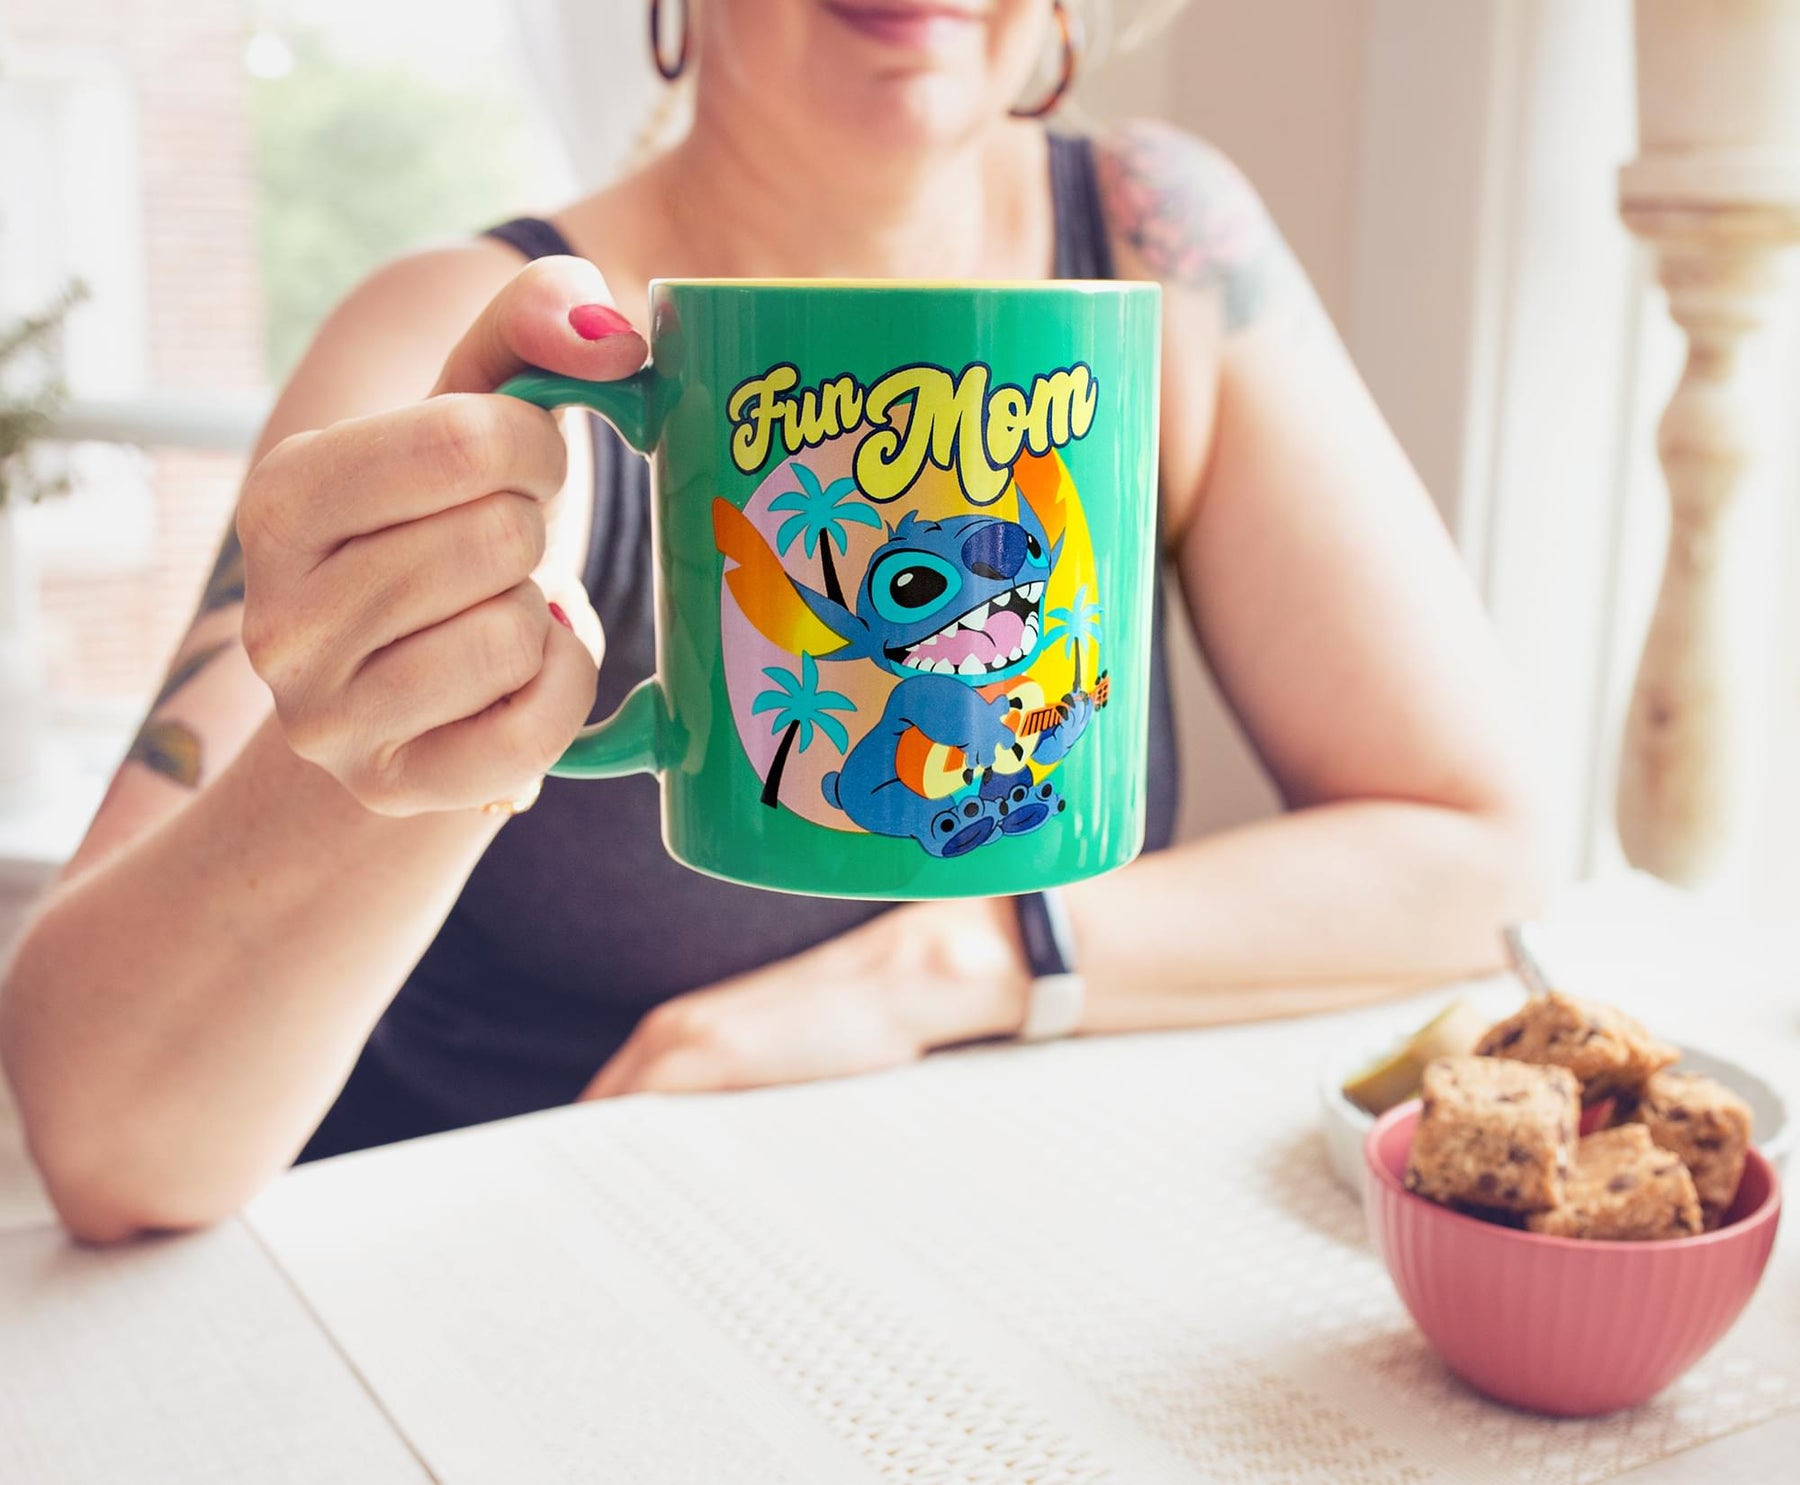 Disney Lilo & Stitch "Fun Mom" Ceramic Mug | Holds 20 Ounces